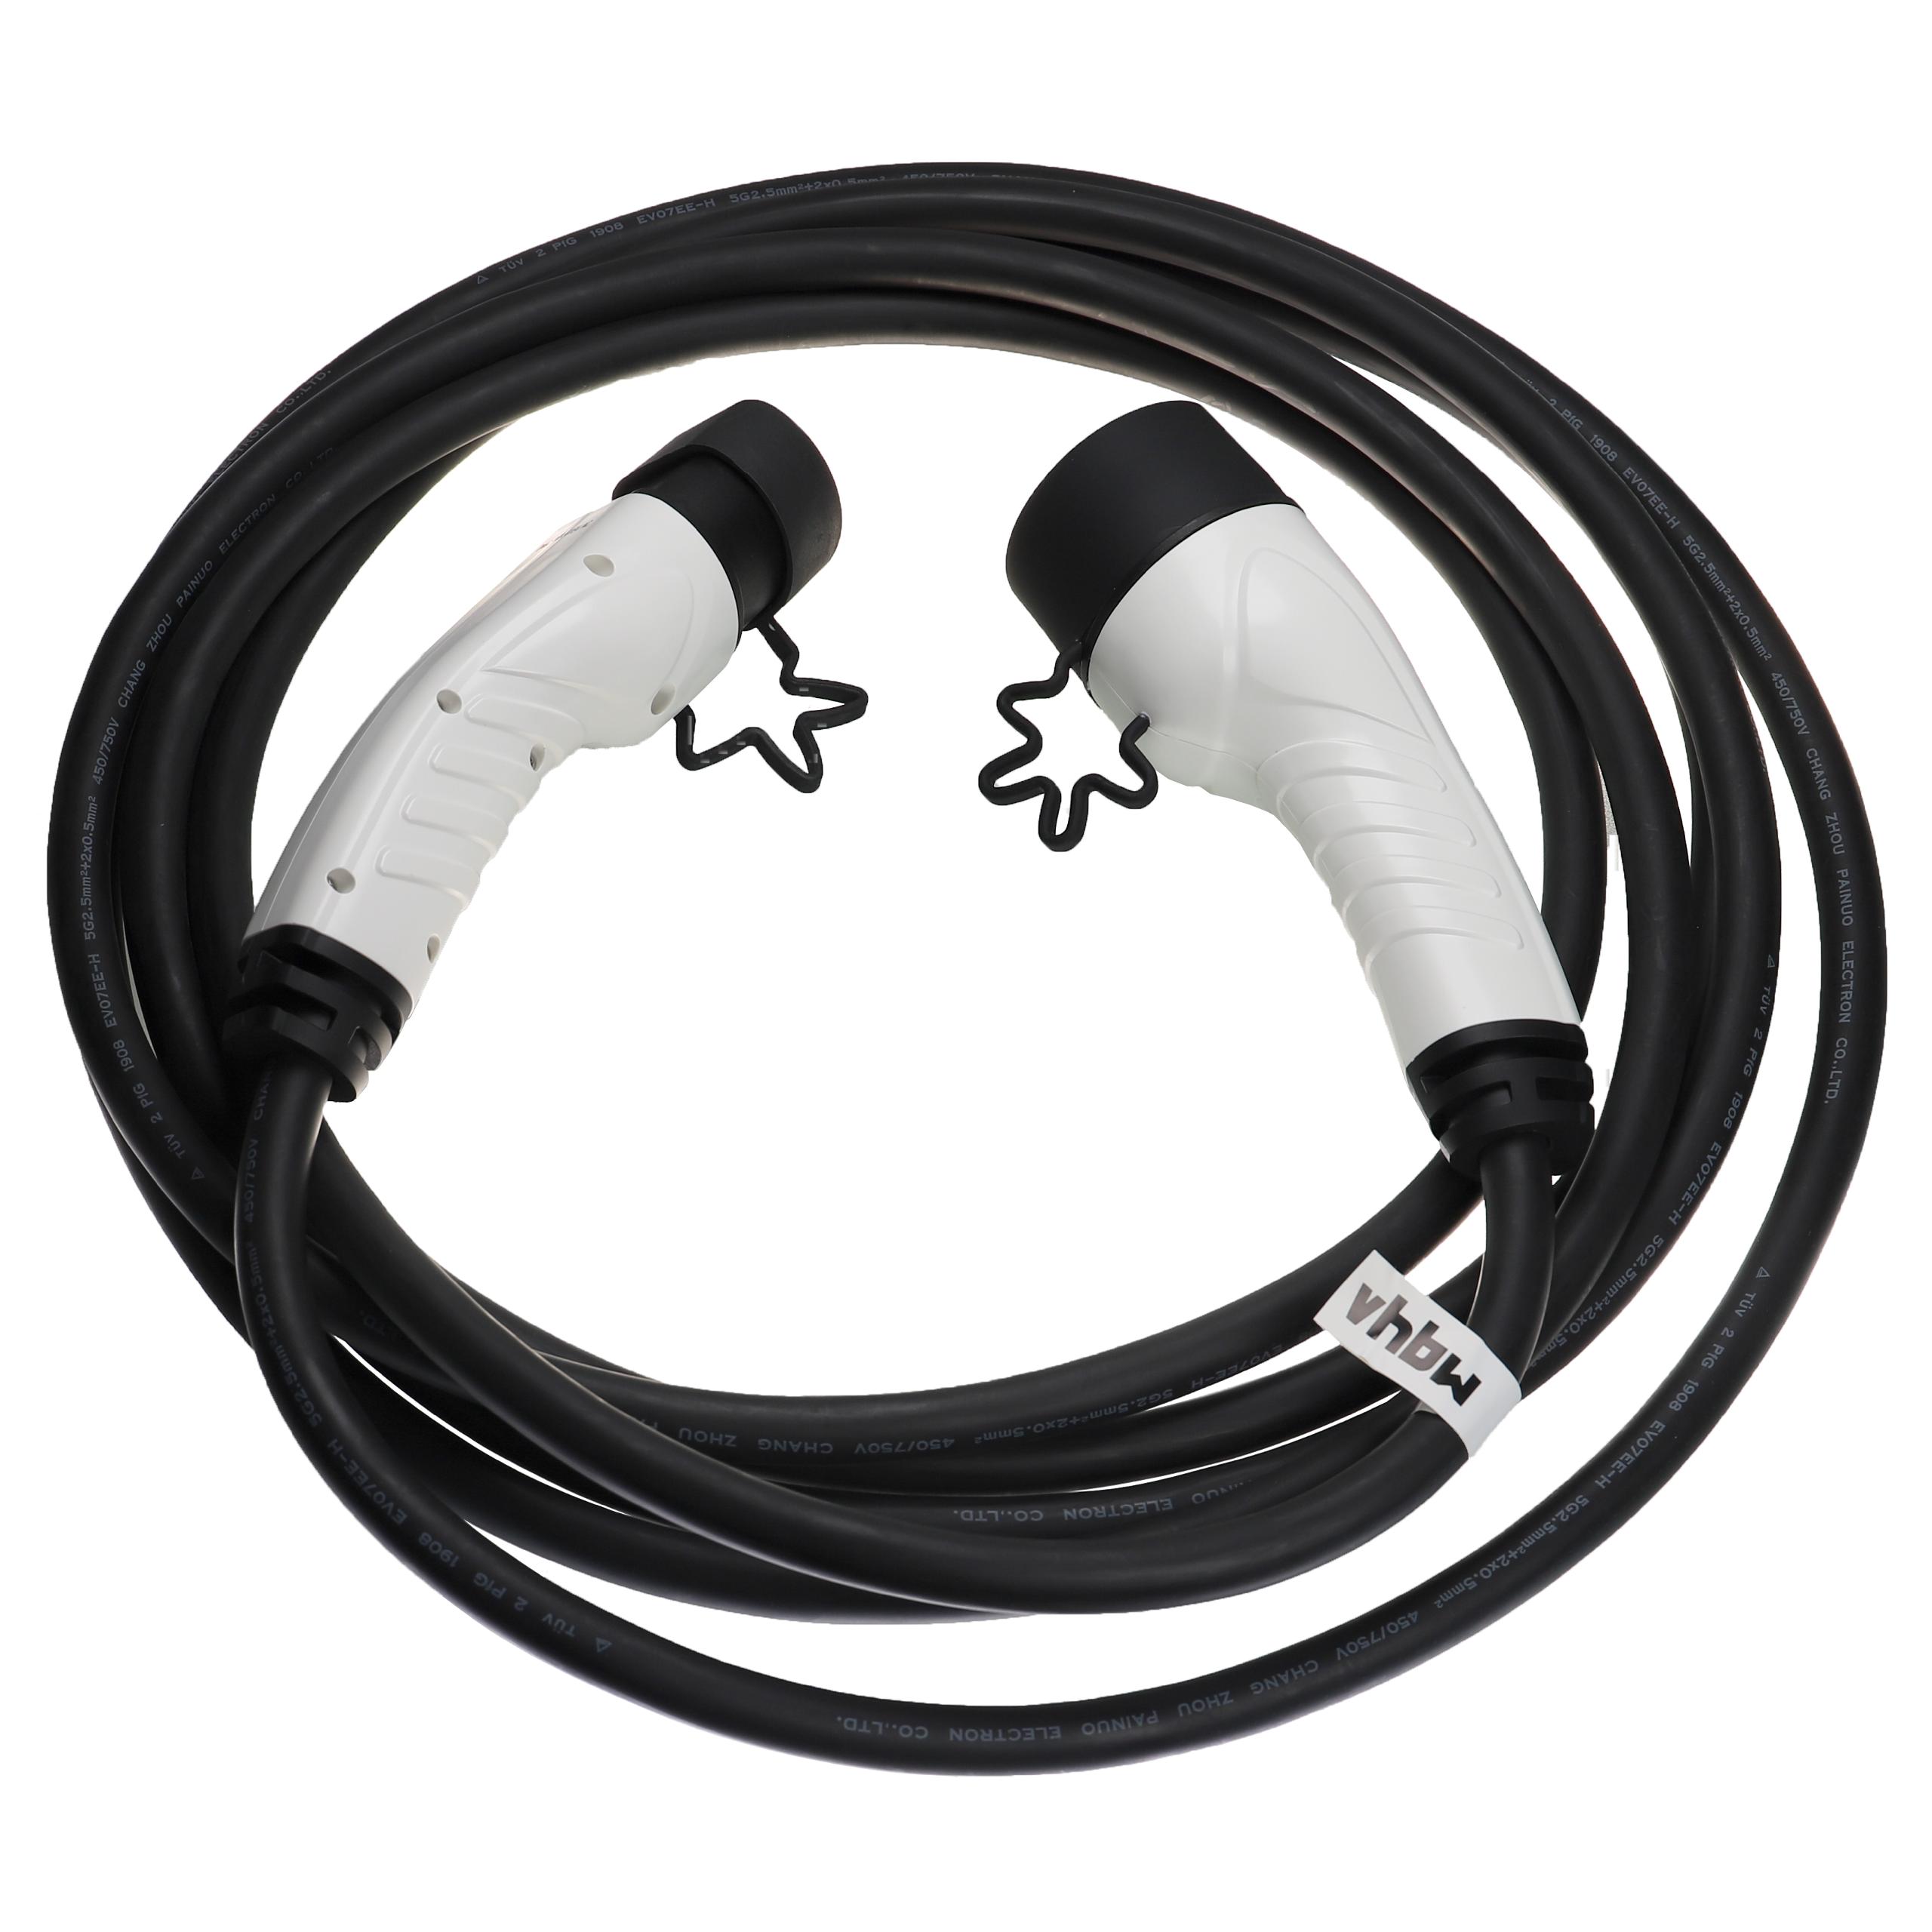 Vhbw Câble de recharge type 2 vers type 2 compatible avec DS 9 E-Tense 4x4  (360 PS) voiture électrique - 3 phases, 16 A, 11 kW, 7 m